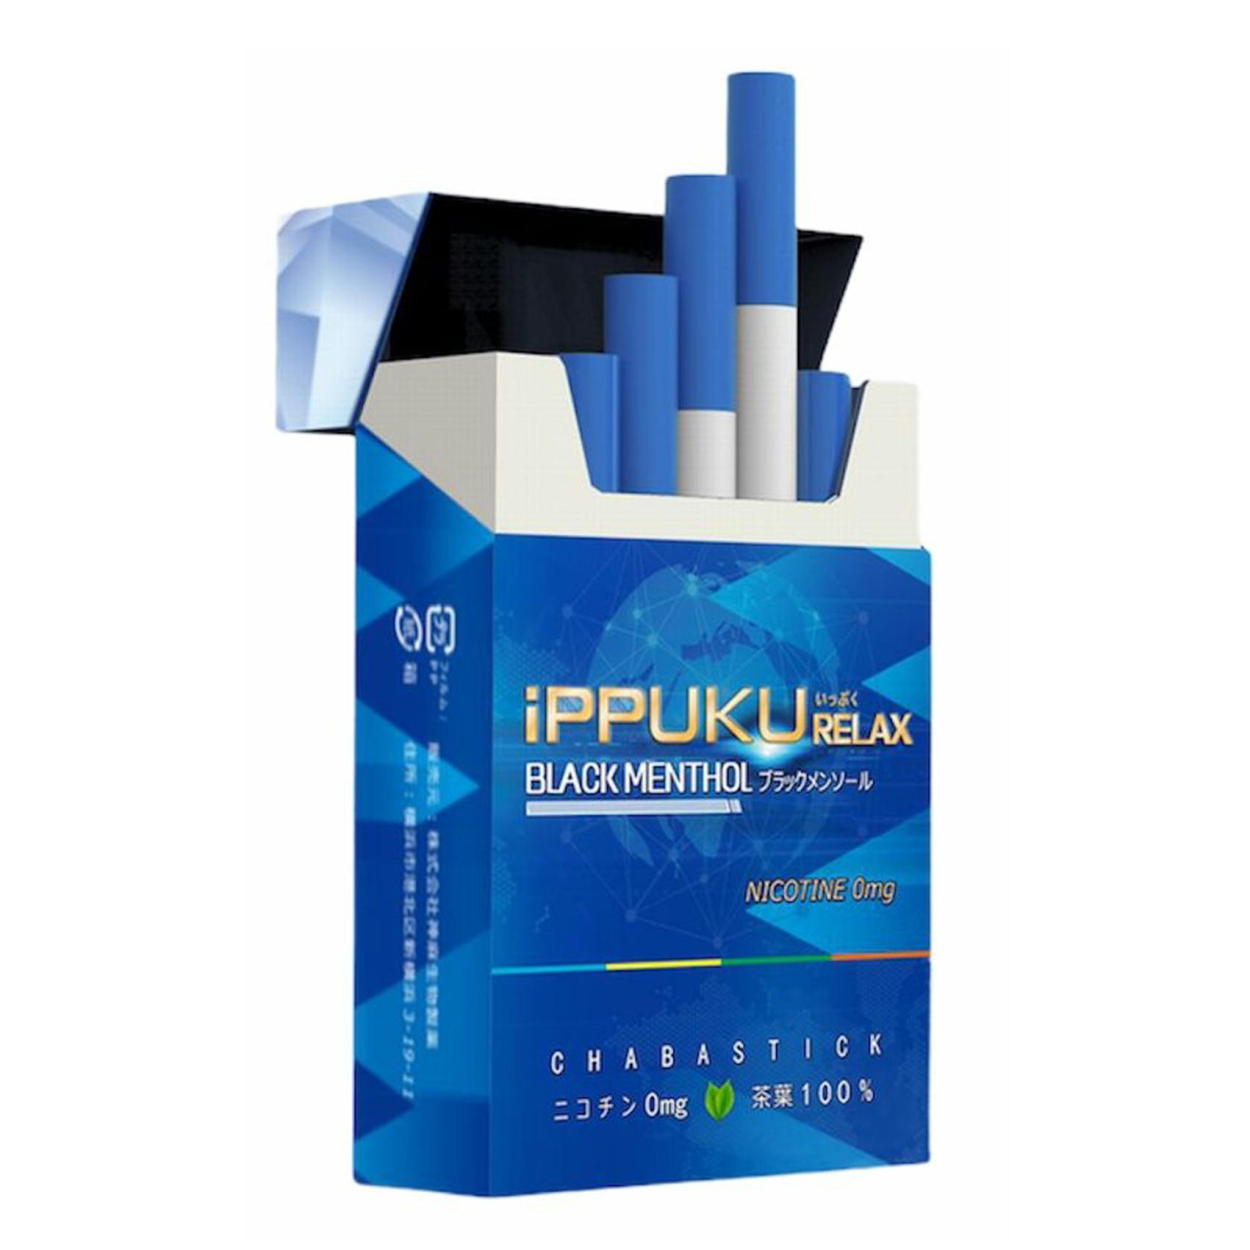 全2種類 iPPUKU RELAX 茶葉スティック 禁煙タバコ 禁煙グッズ 禁煙 タバコ 茶葉 スティック ニコチン0 ニコチンゼロ ブラック メンソール レギュラー 3箱セット